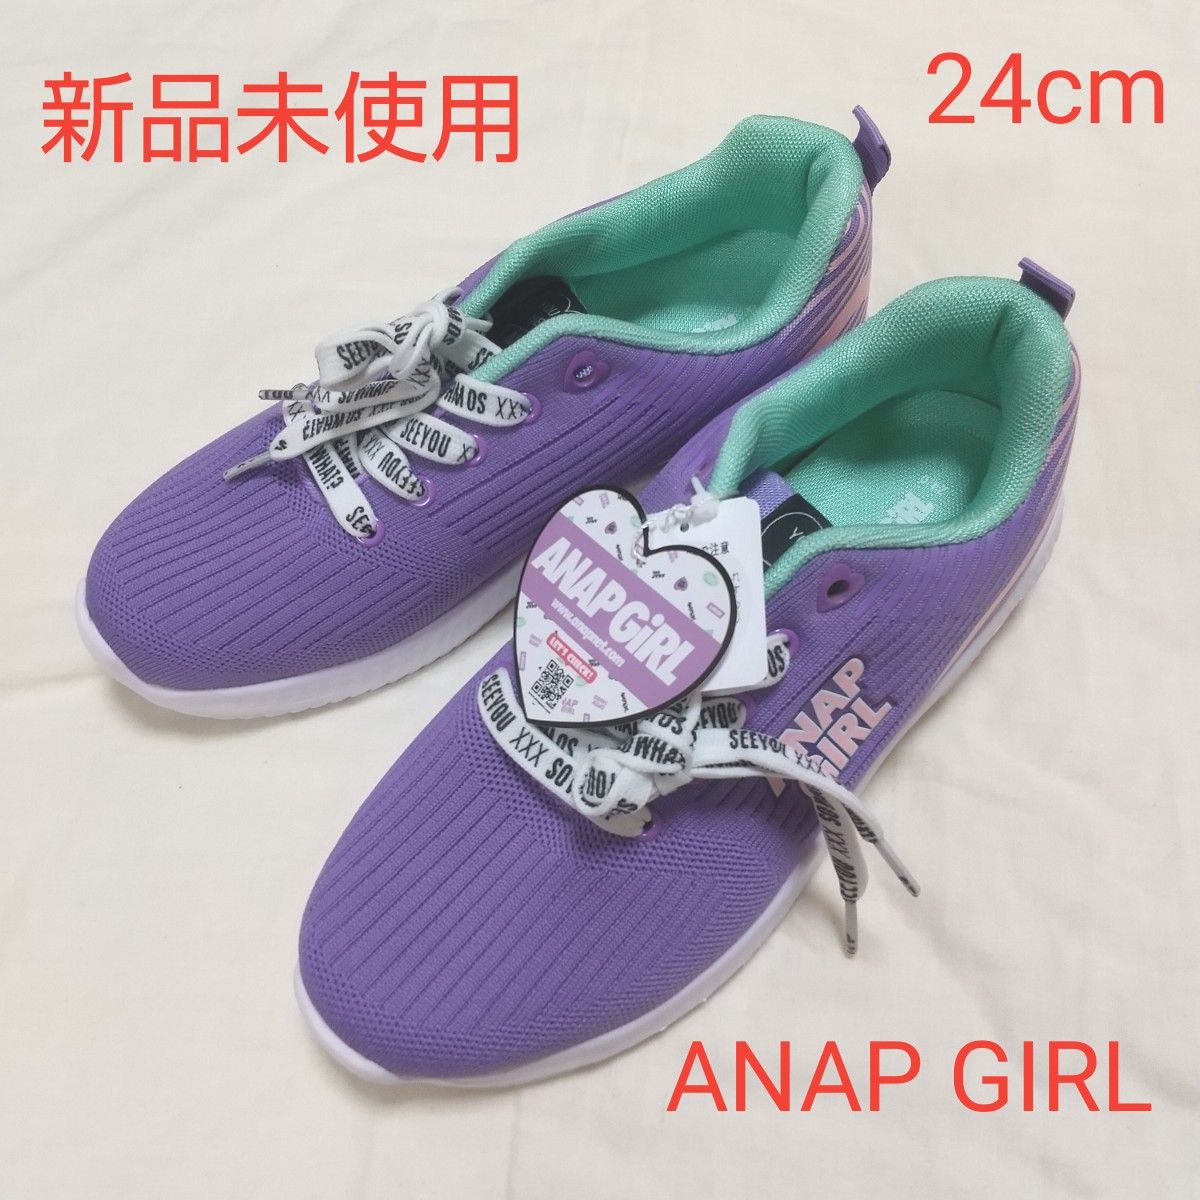 新品未使用 キッズ レディース ANAPGIRL スニーカー 24cm 紫 パープル 女の子 アナップガール